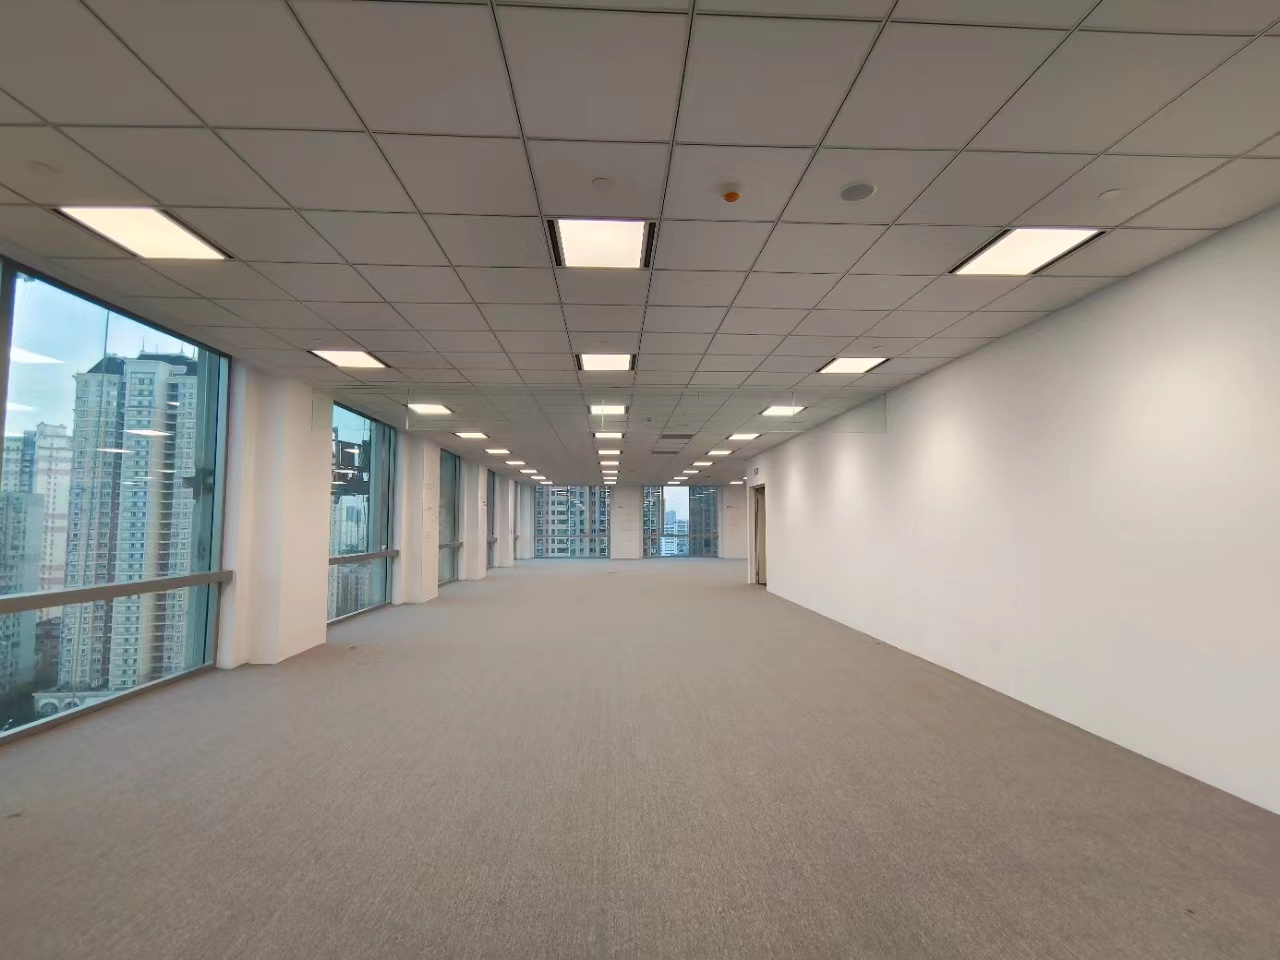 马当路全新甲级写字楼凯德晶萃广场出租2000平整层双地铁现房